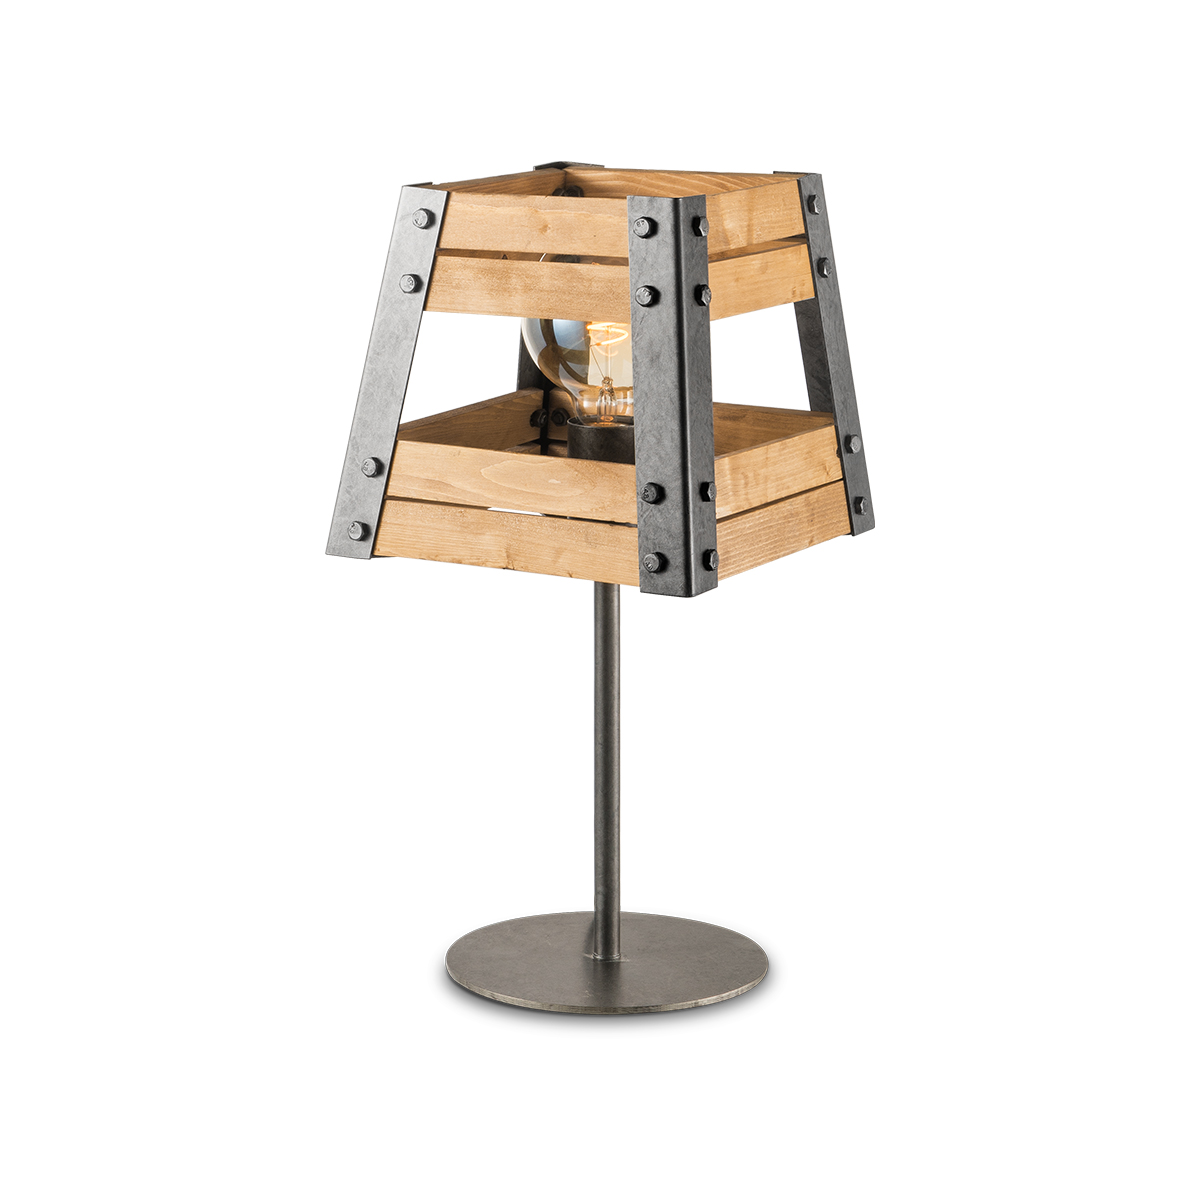 Tangla lighting - TLT1087-09NTGM - Table lamp 1 Light - metal + pine FSC wood - burned metal + natural - dual large - E27